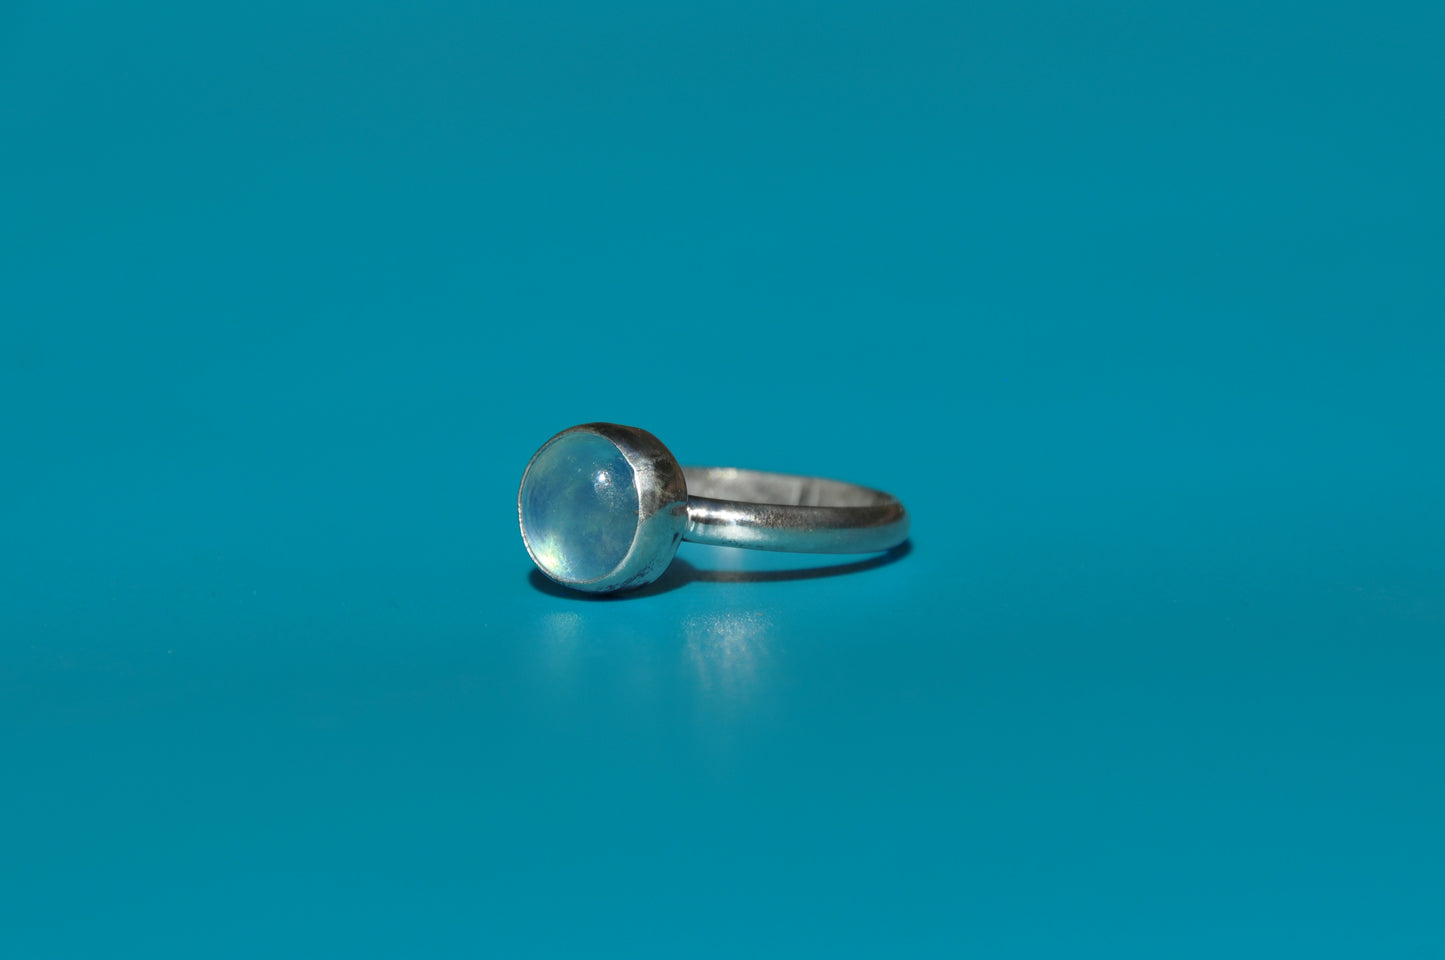 Aquamarine Ring